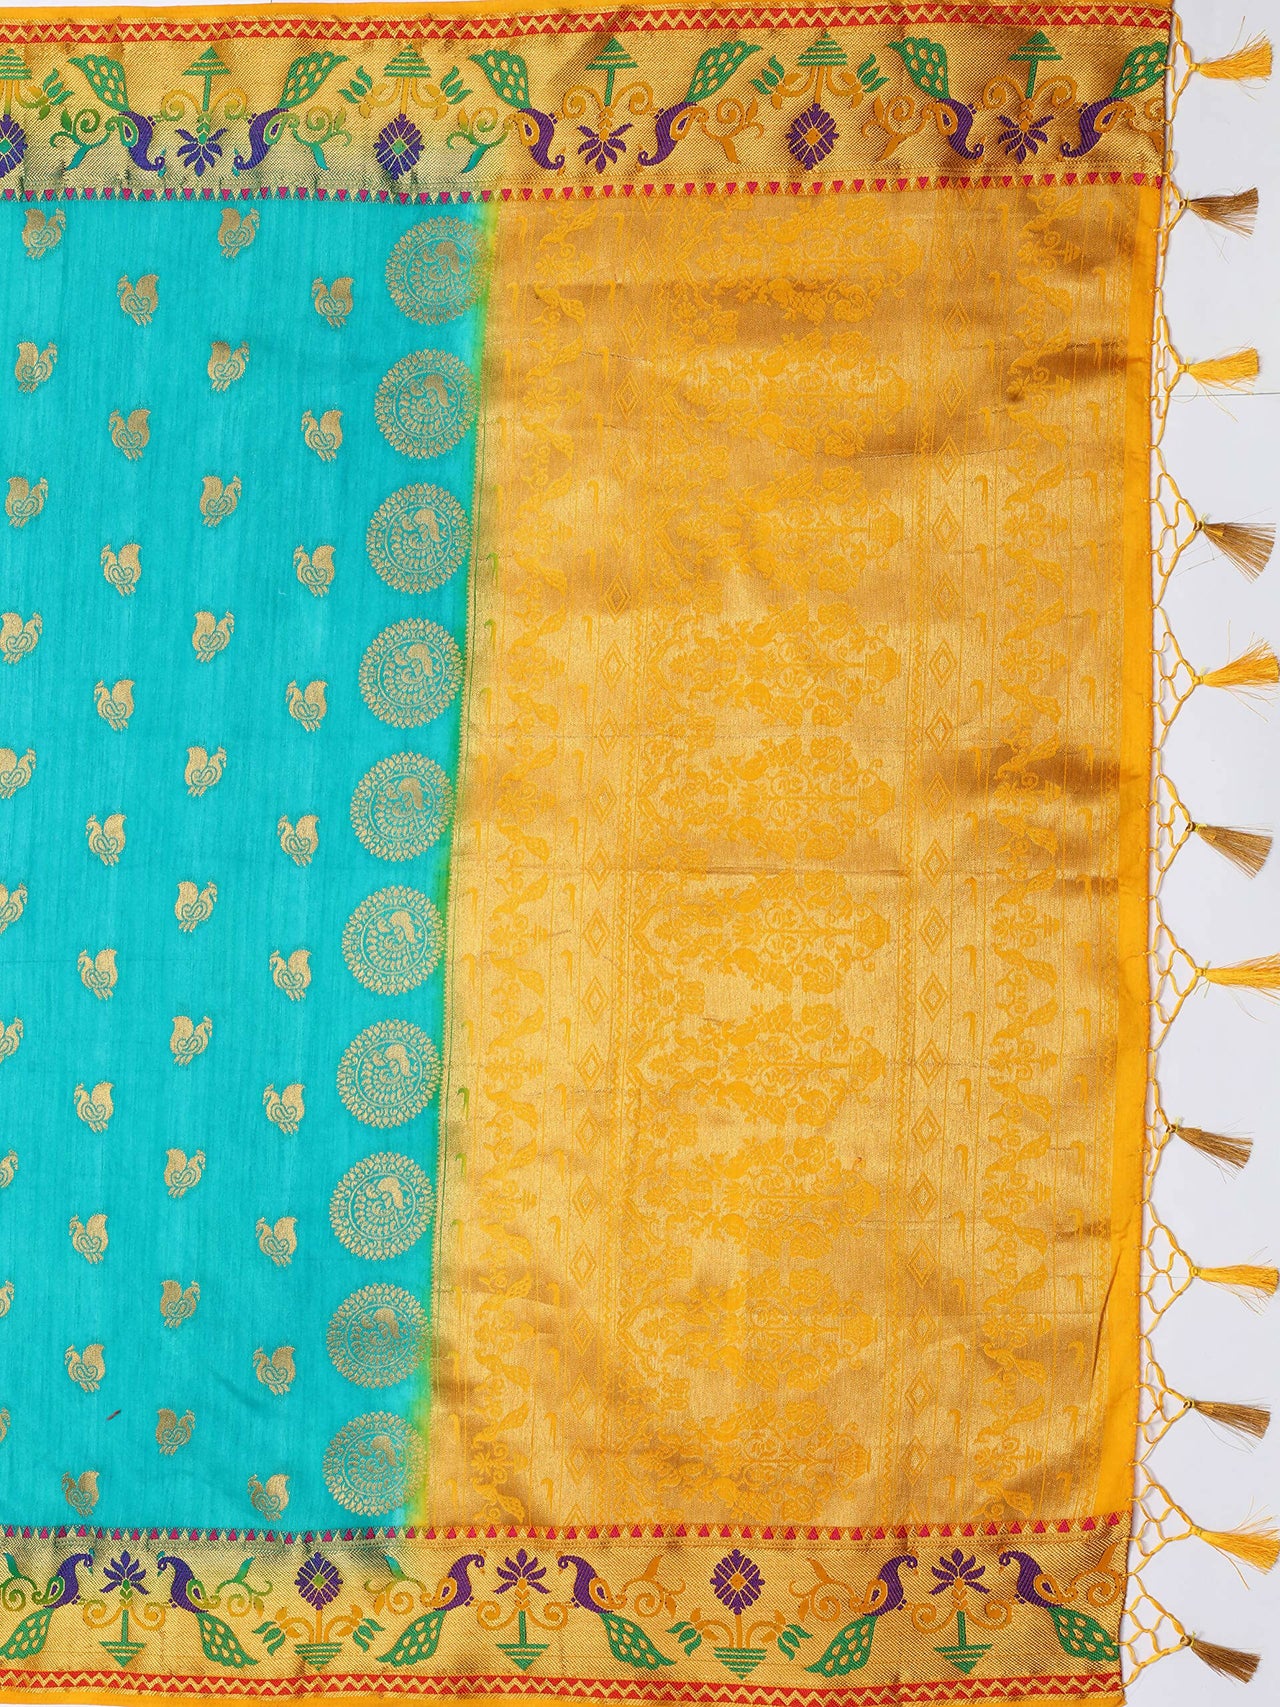 Mimosa Women's Turquoise Kanchipuram Silk Saree - Distacart